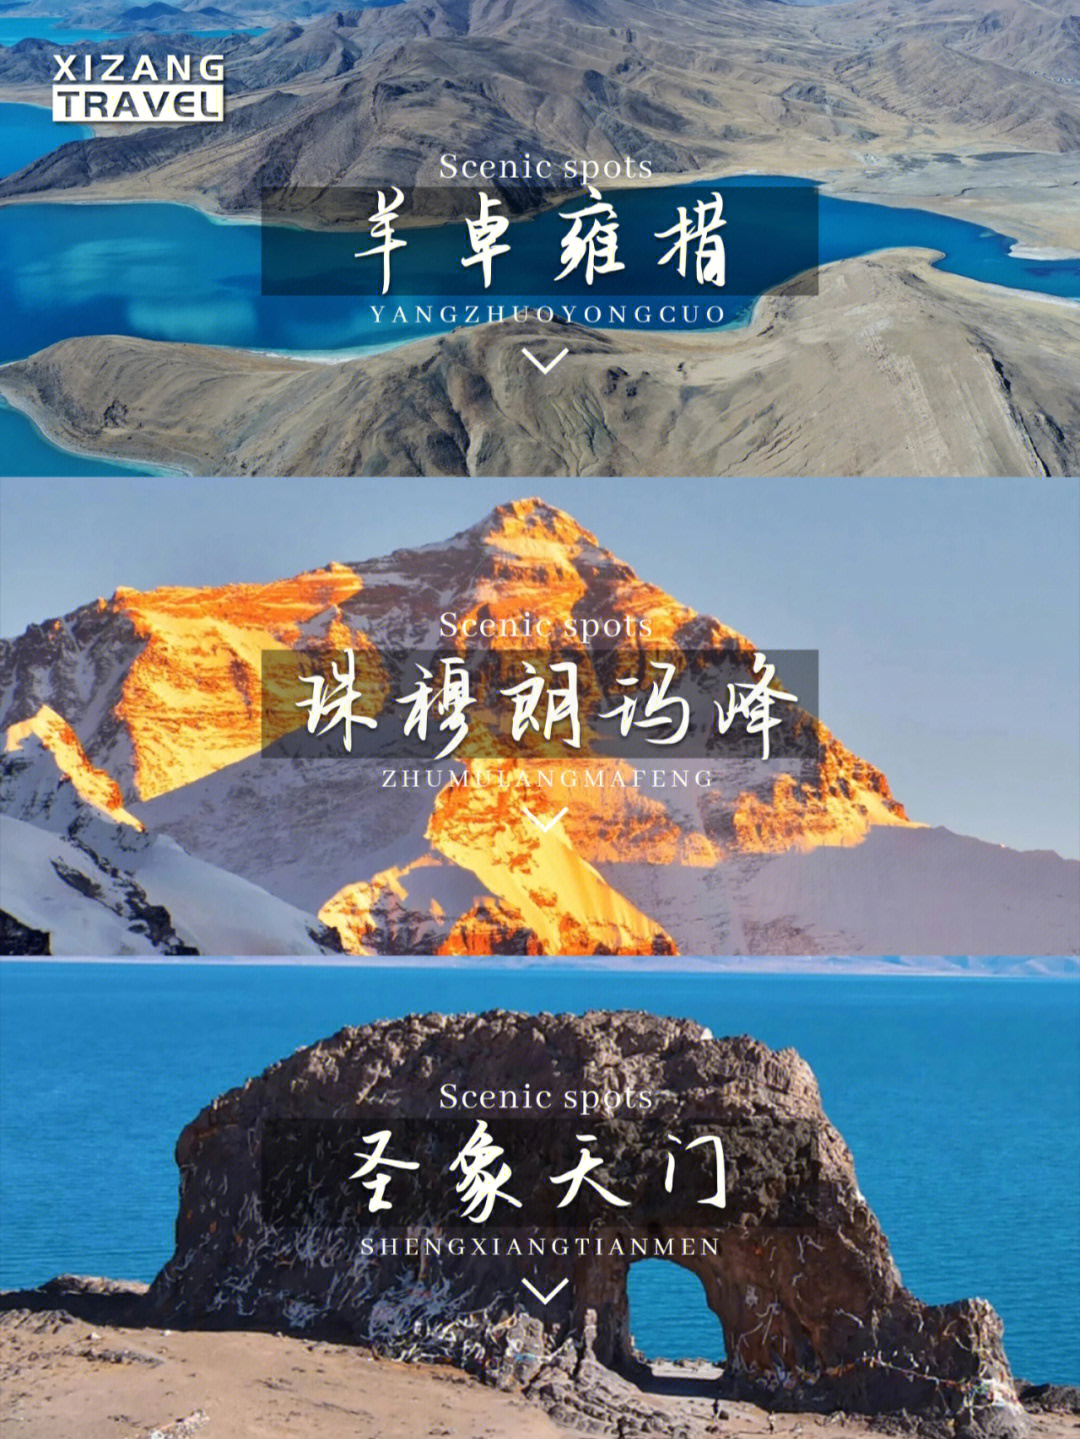 西藏拼车组队中羊湖珠峰圣象天门7日